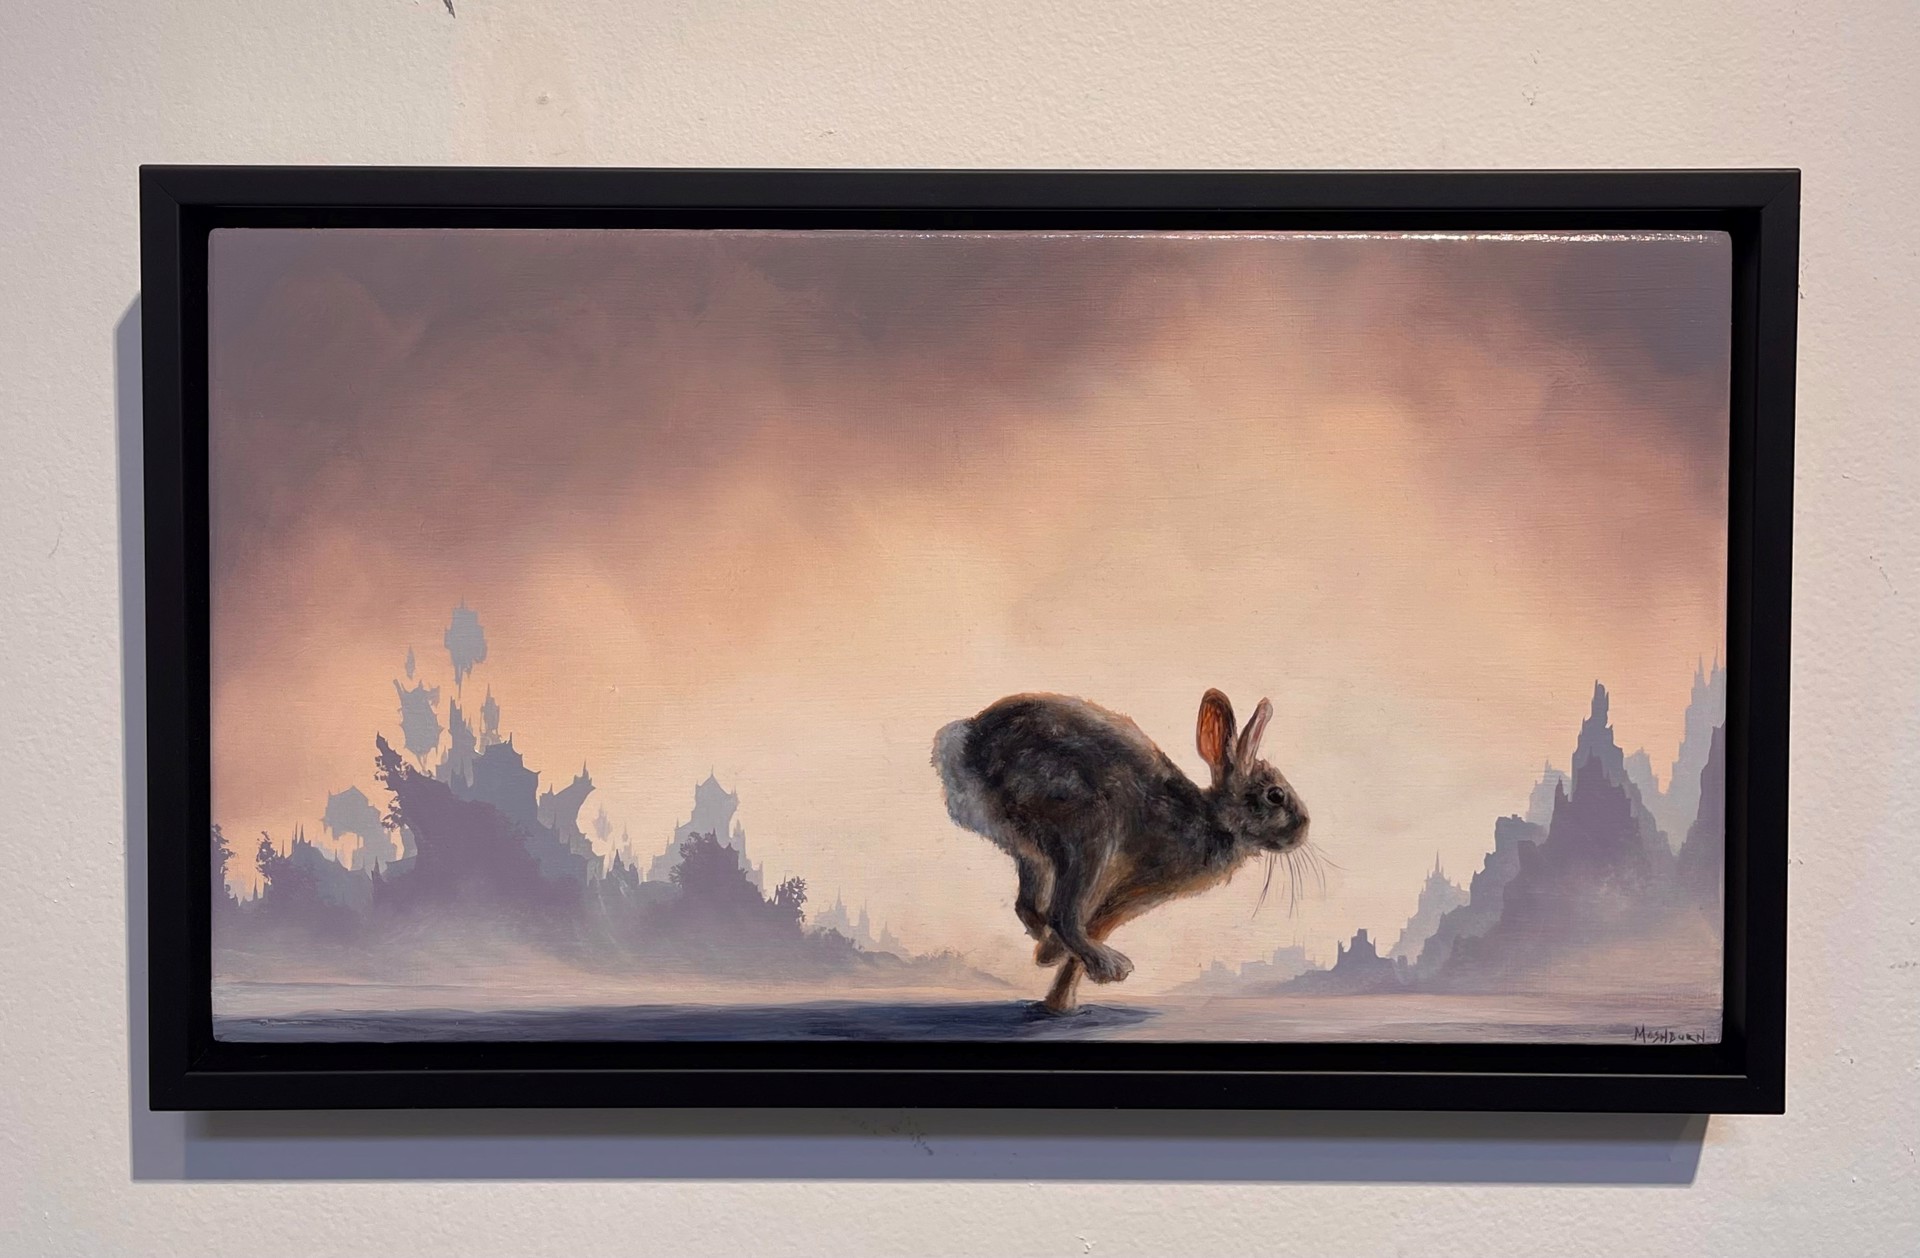 Running Rabbit by Brian Mashburn